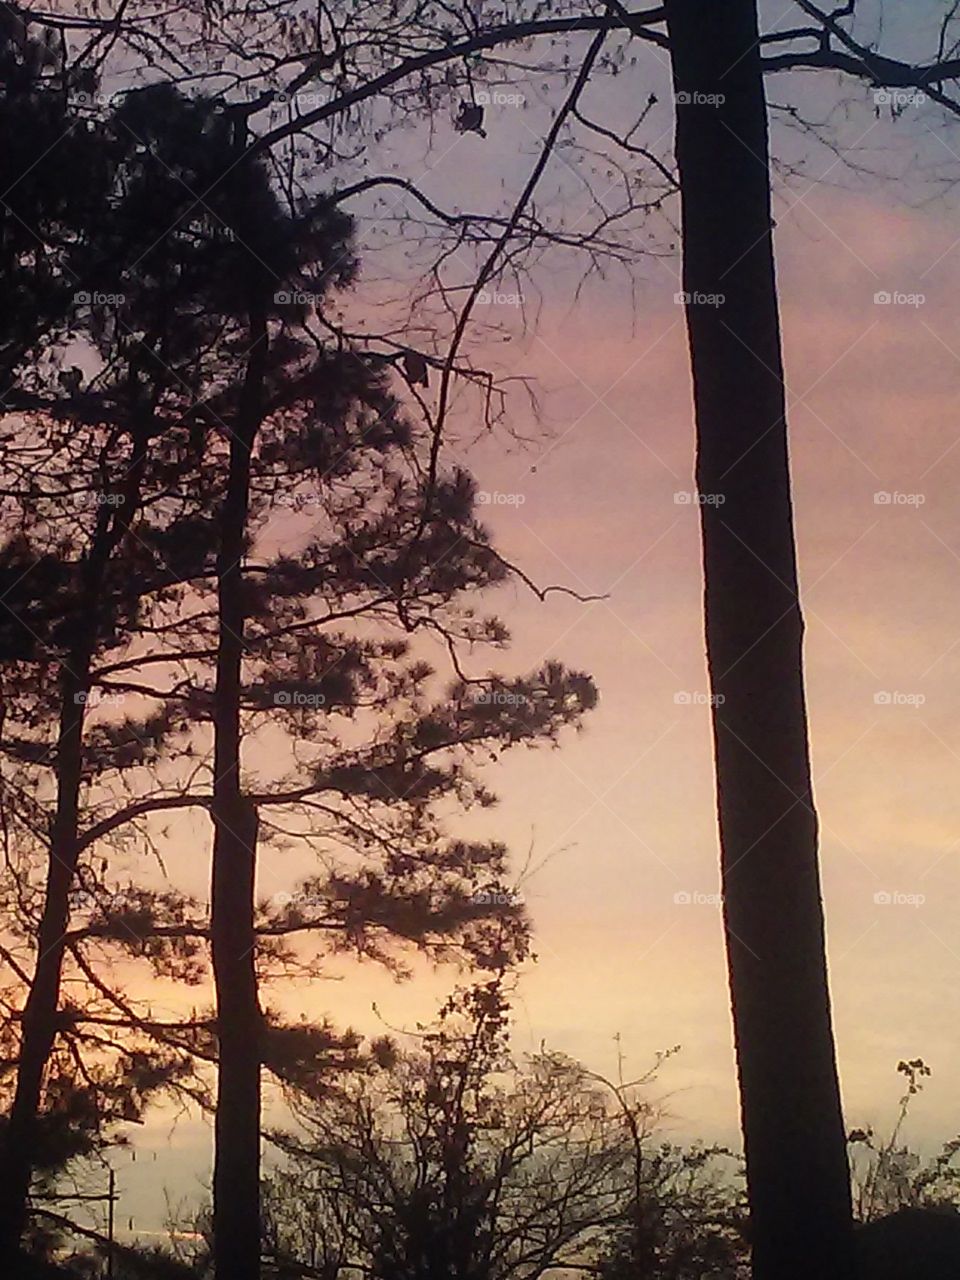 This morning's sunrise in Georgia2